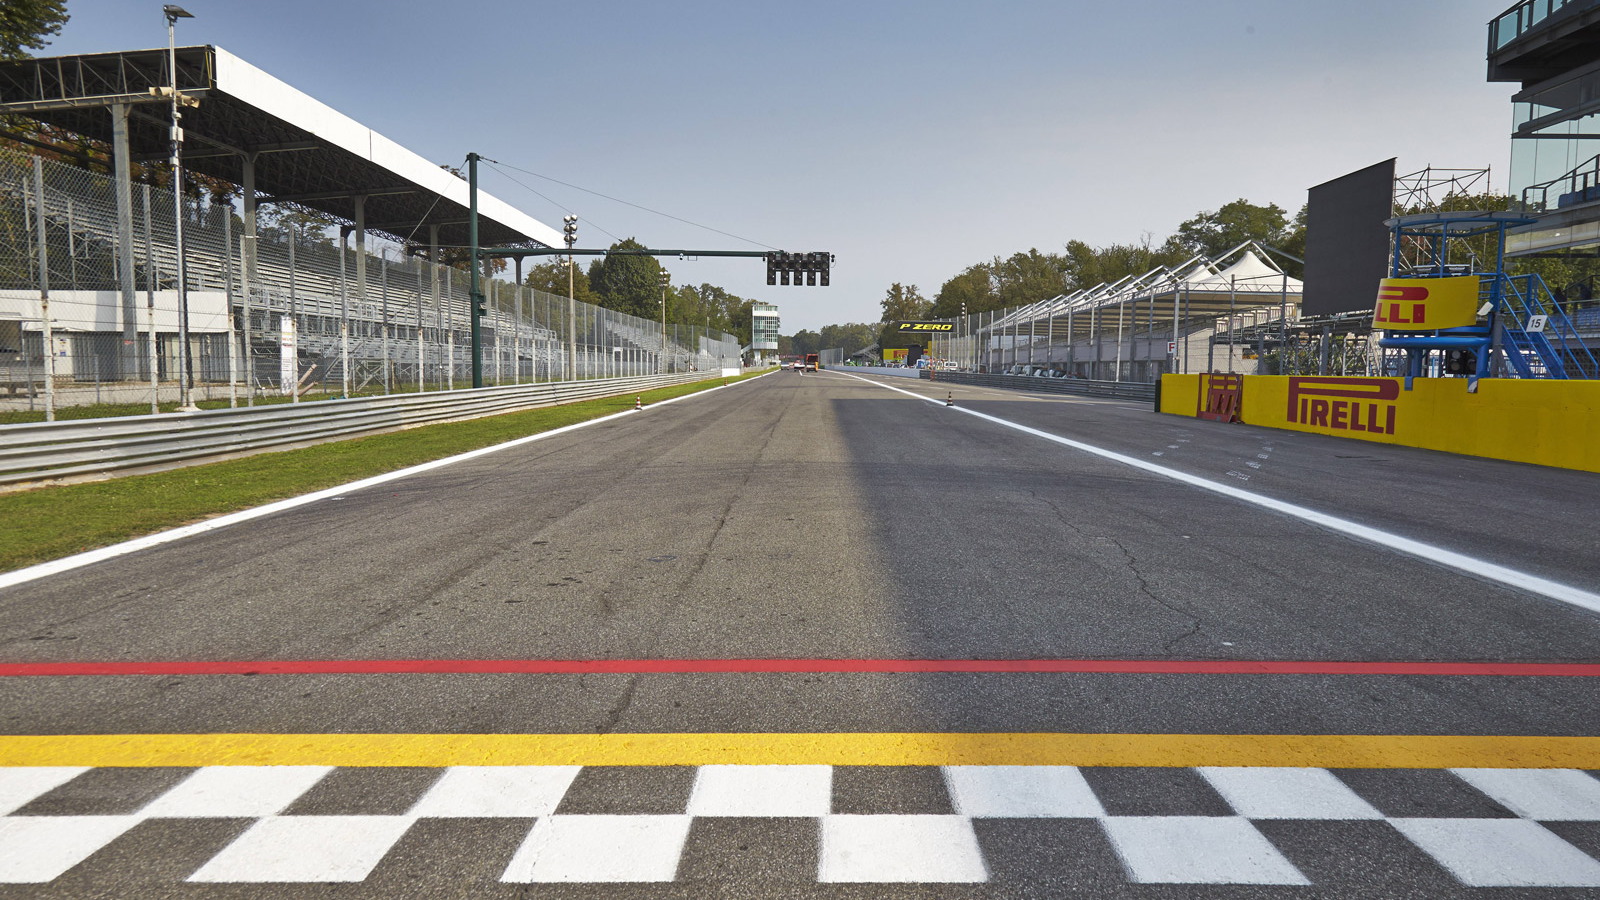 Autodromo Nazionale Monza, home of the Formula 1 Italian Grand Prix